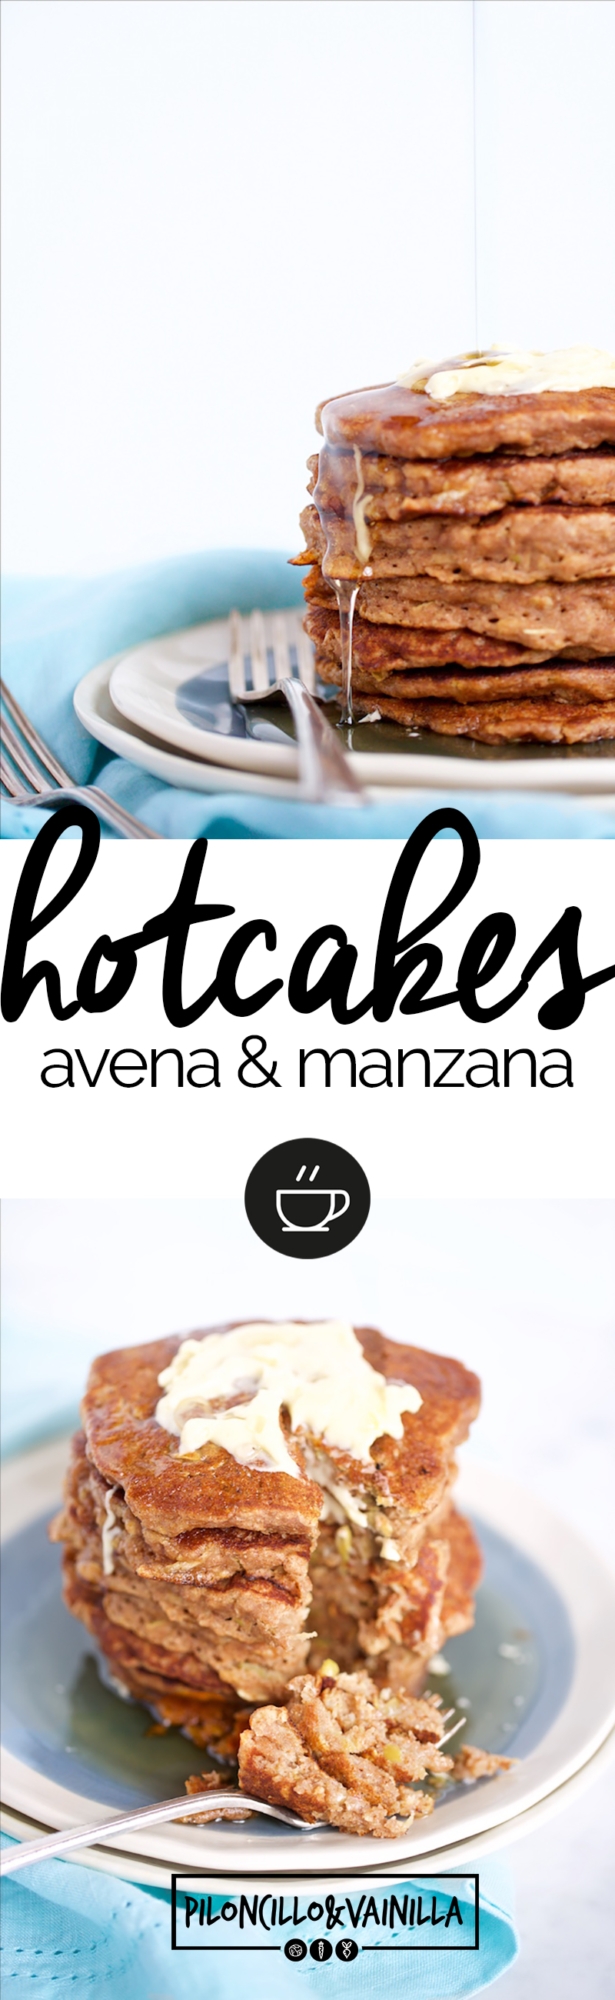 hotcakes de avena y manzana